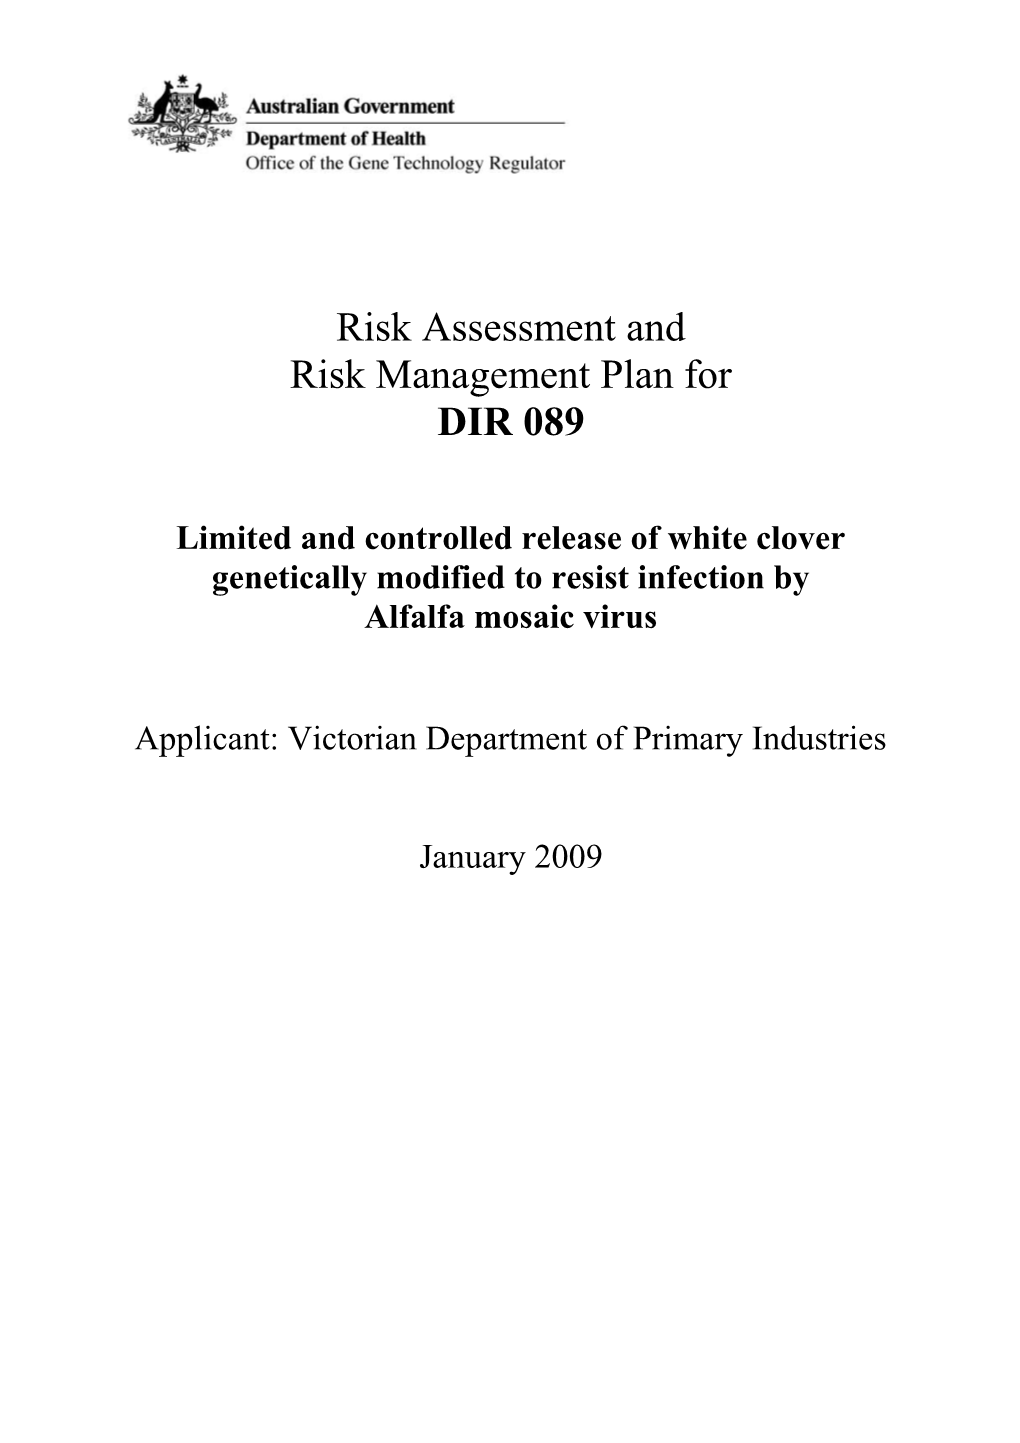 Full Risk Assessment and Risk Management Plan